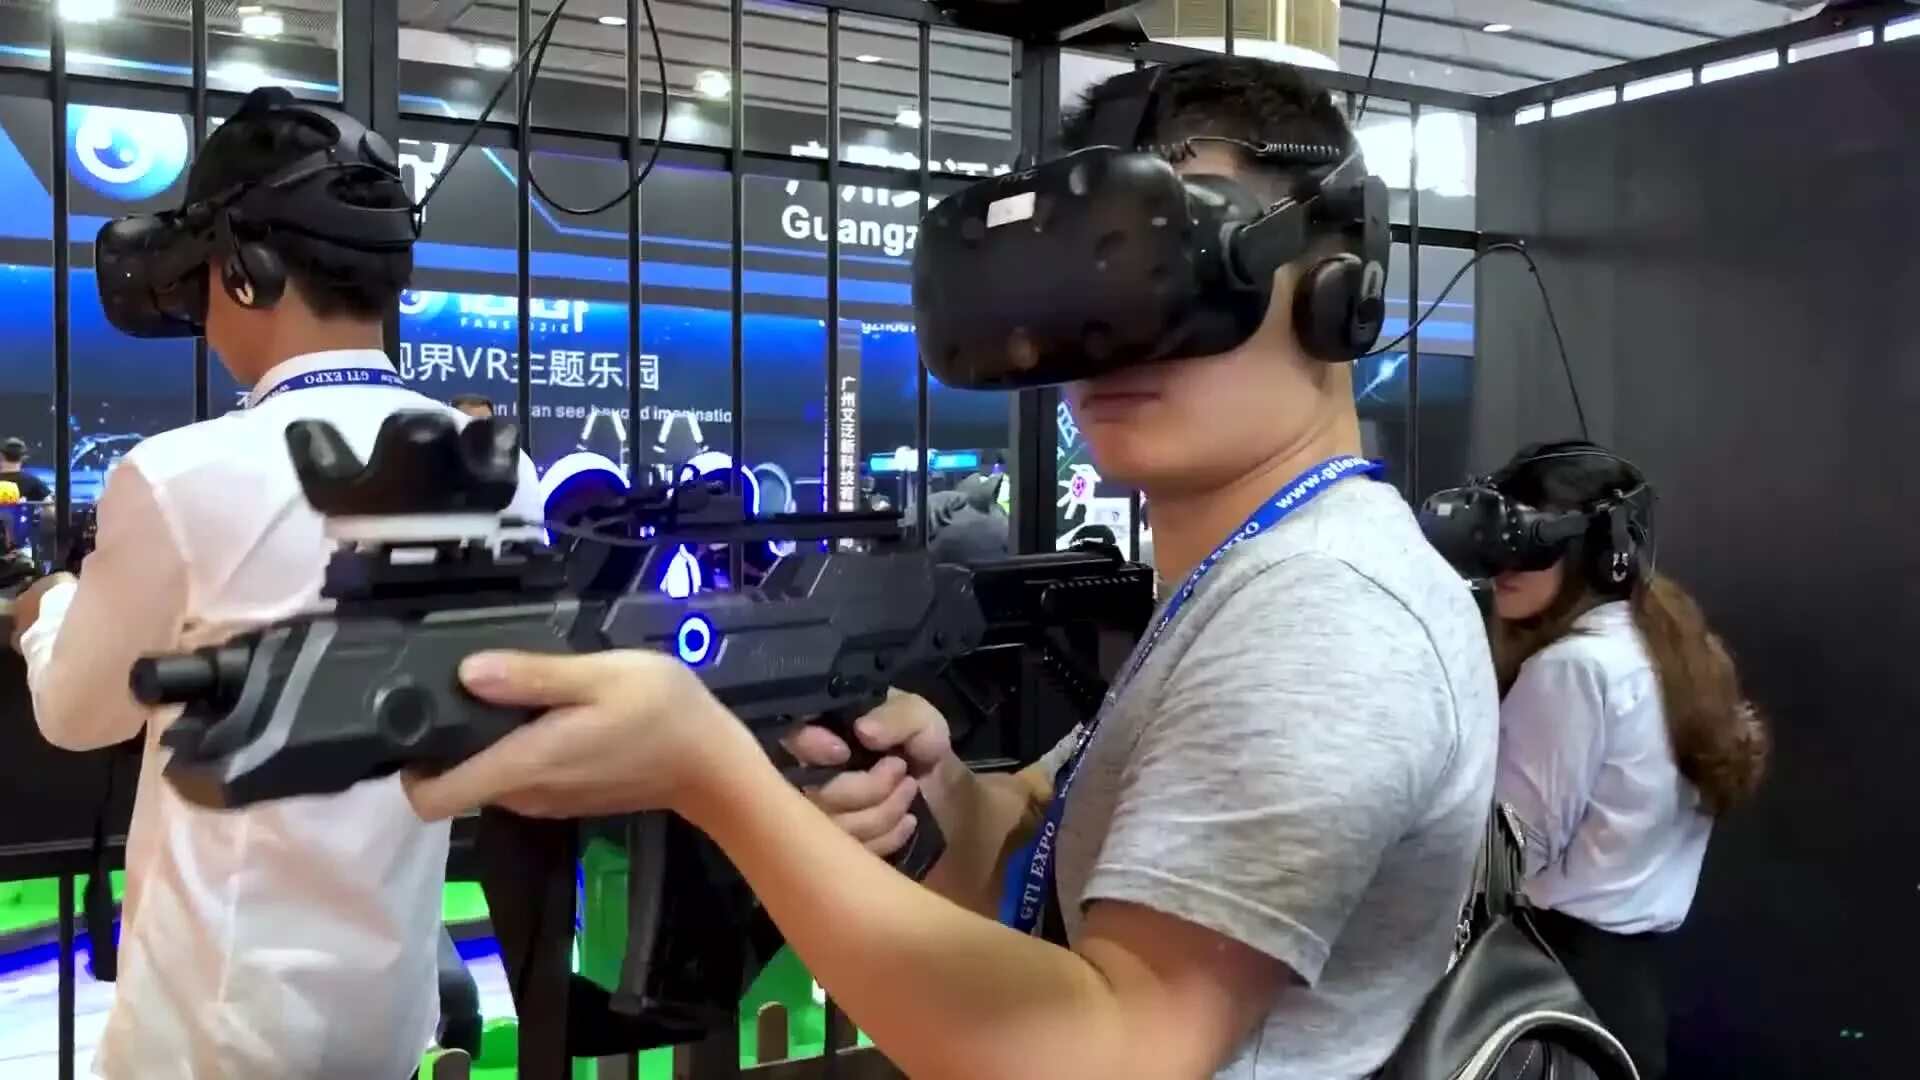 Cs vr. Виртуальная реальность контр страйк. КС В VR 2022. Симулятор виртуальной реальности. Игровые автоматы виртуальная реальность.